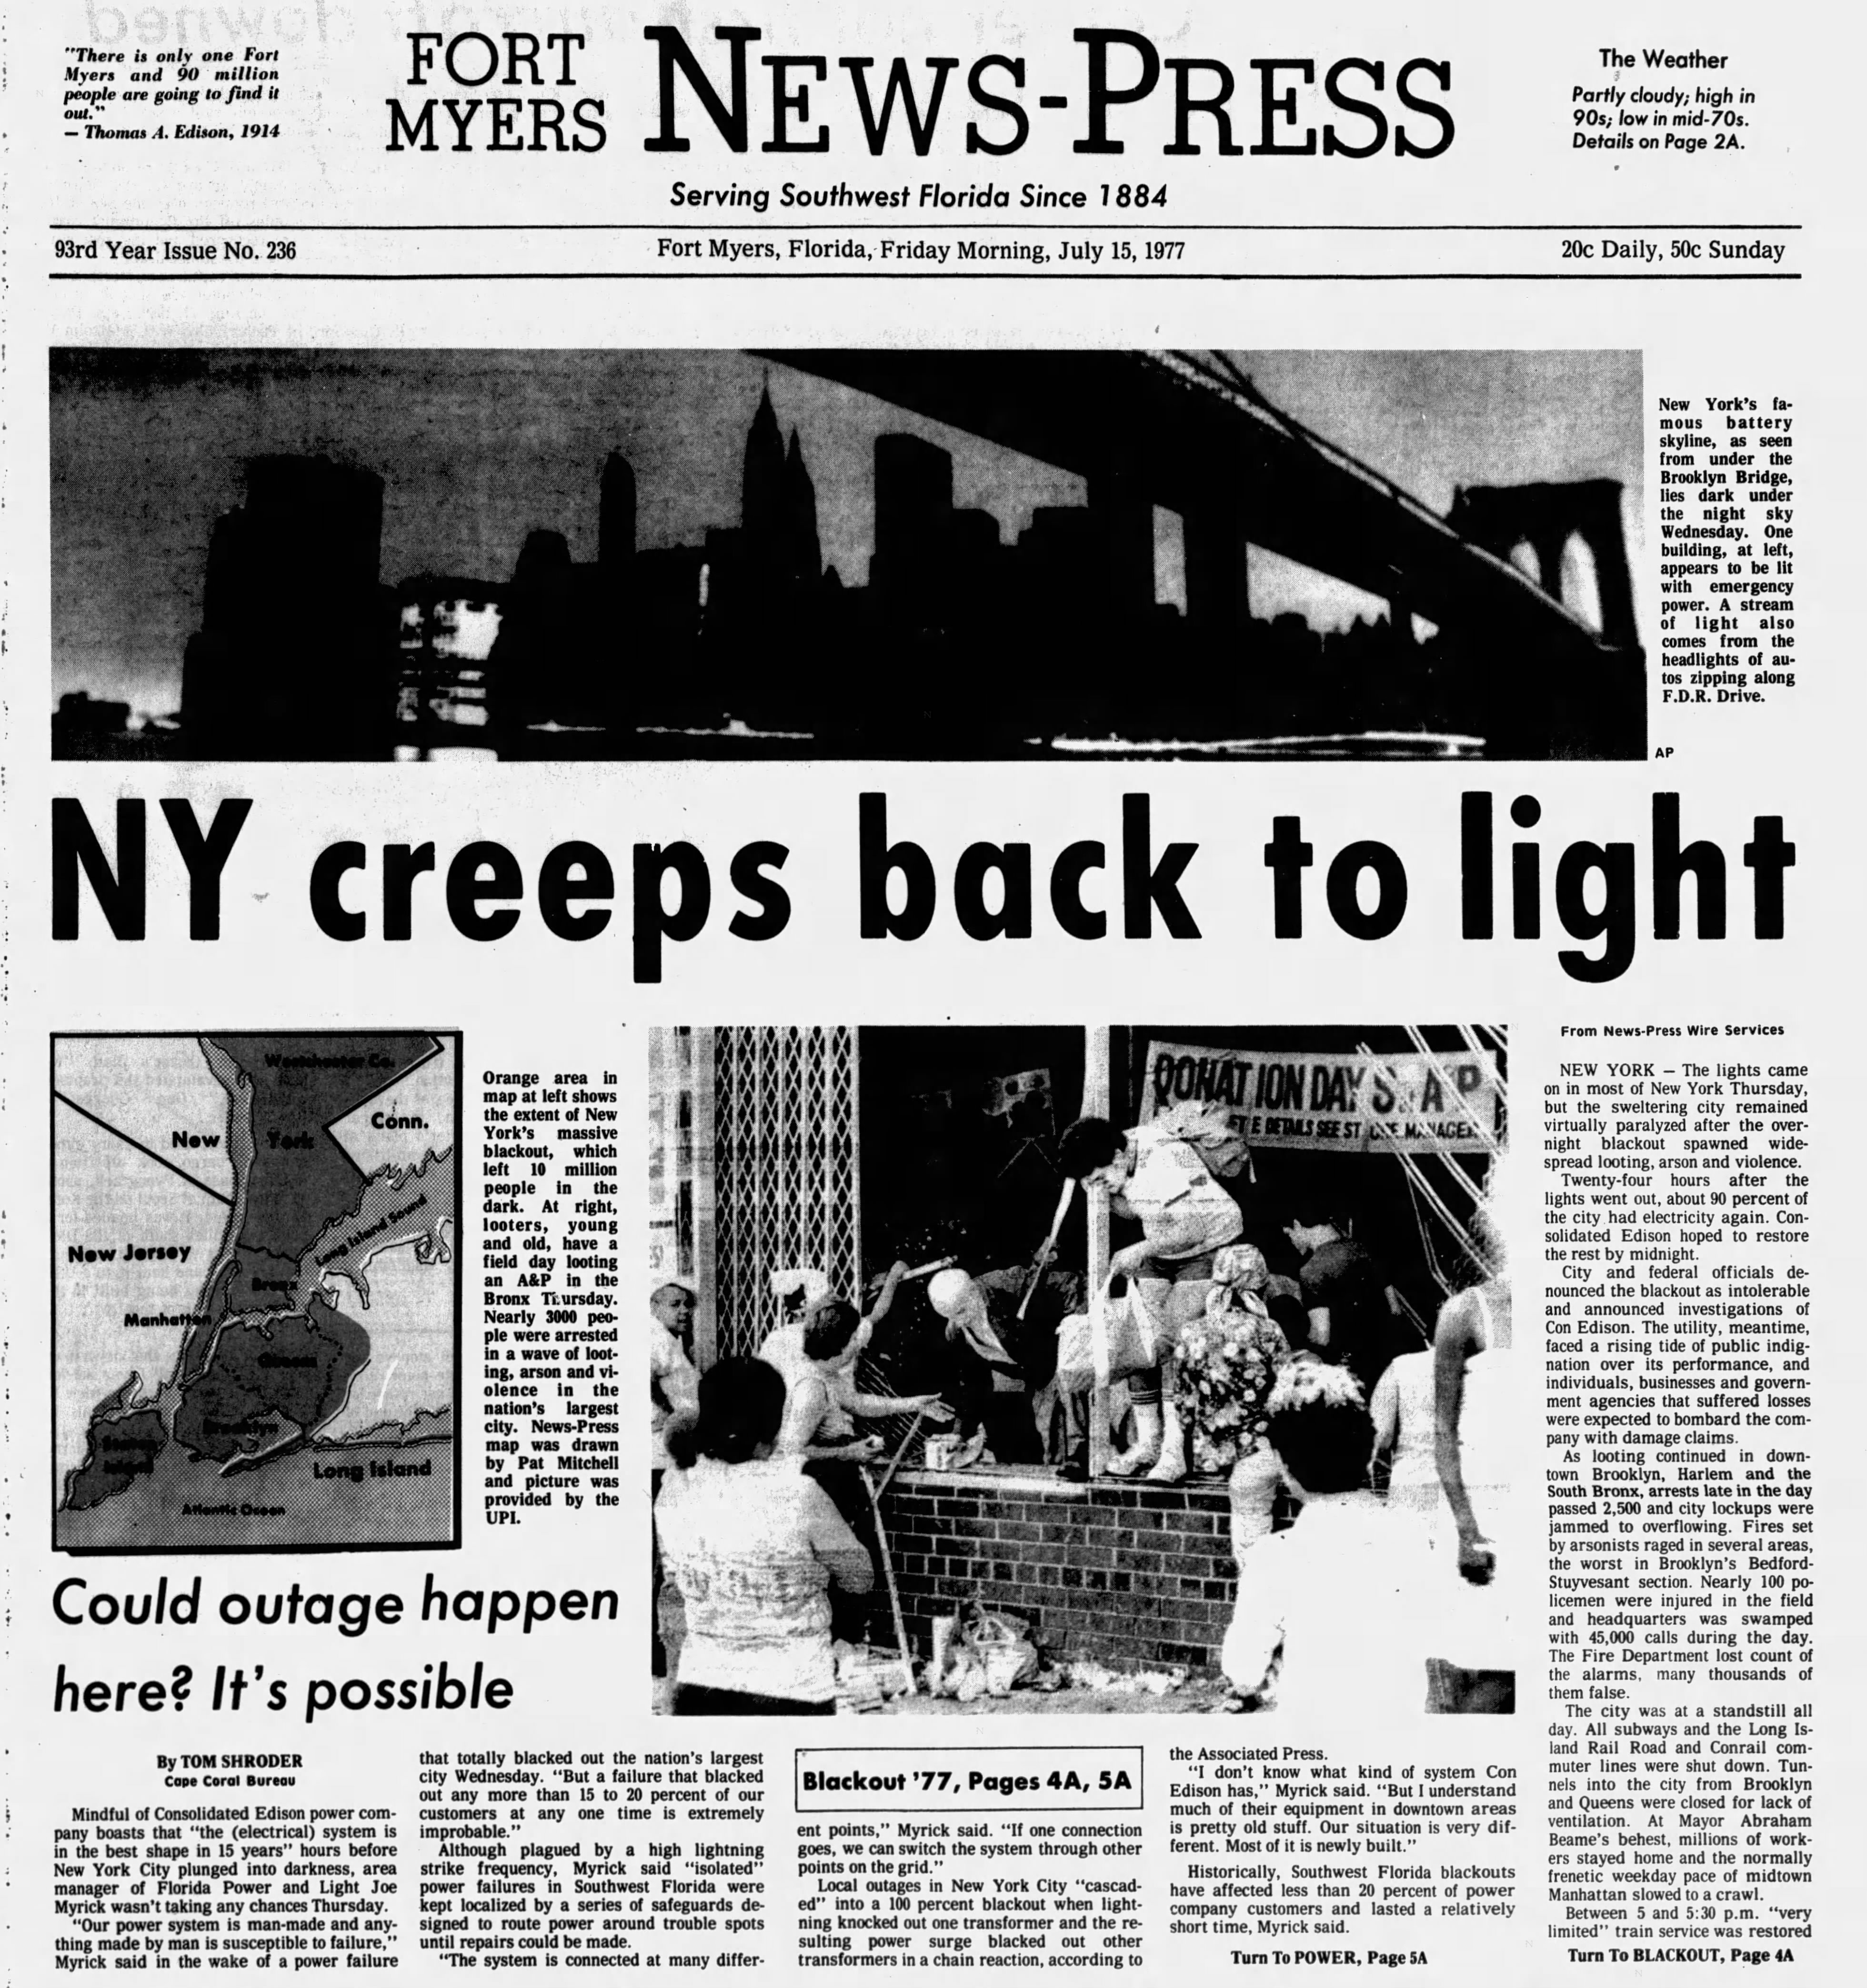 New york newspapers. Блэкаут в Нью-Йорке 1977. Американская газета. Старые американские газеты. Американские газеты и журналы.